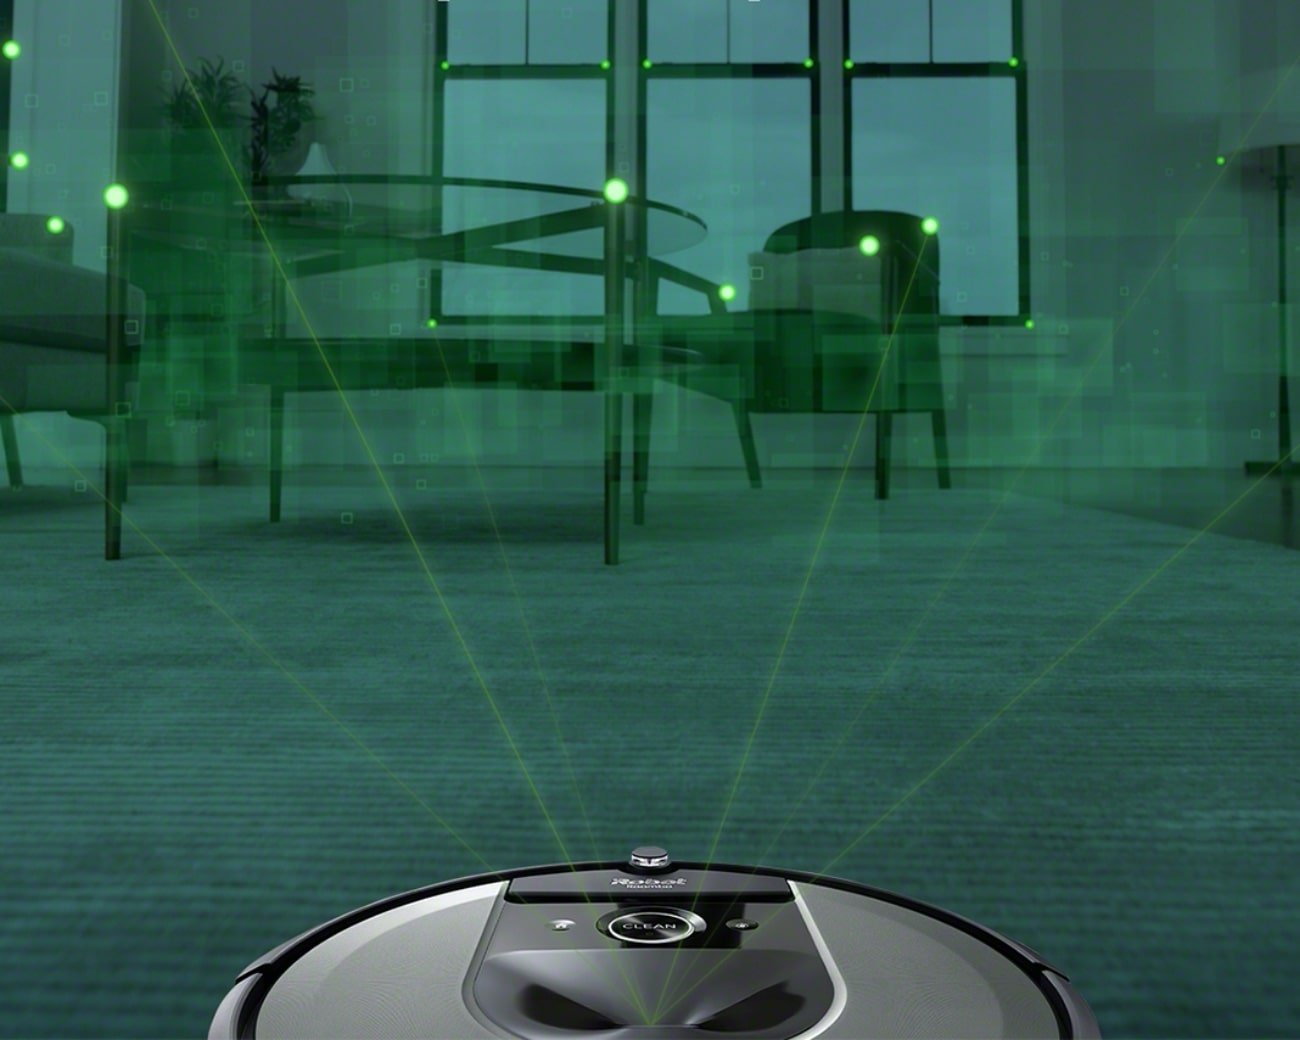 i7シリーズ｜ロボット掃除機 ルンバ | アイロボット公式サイト